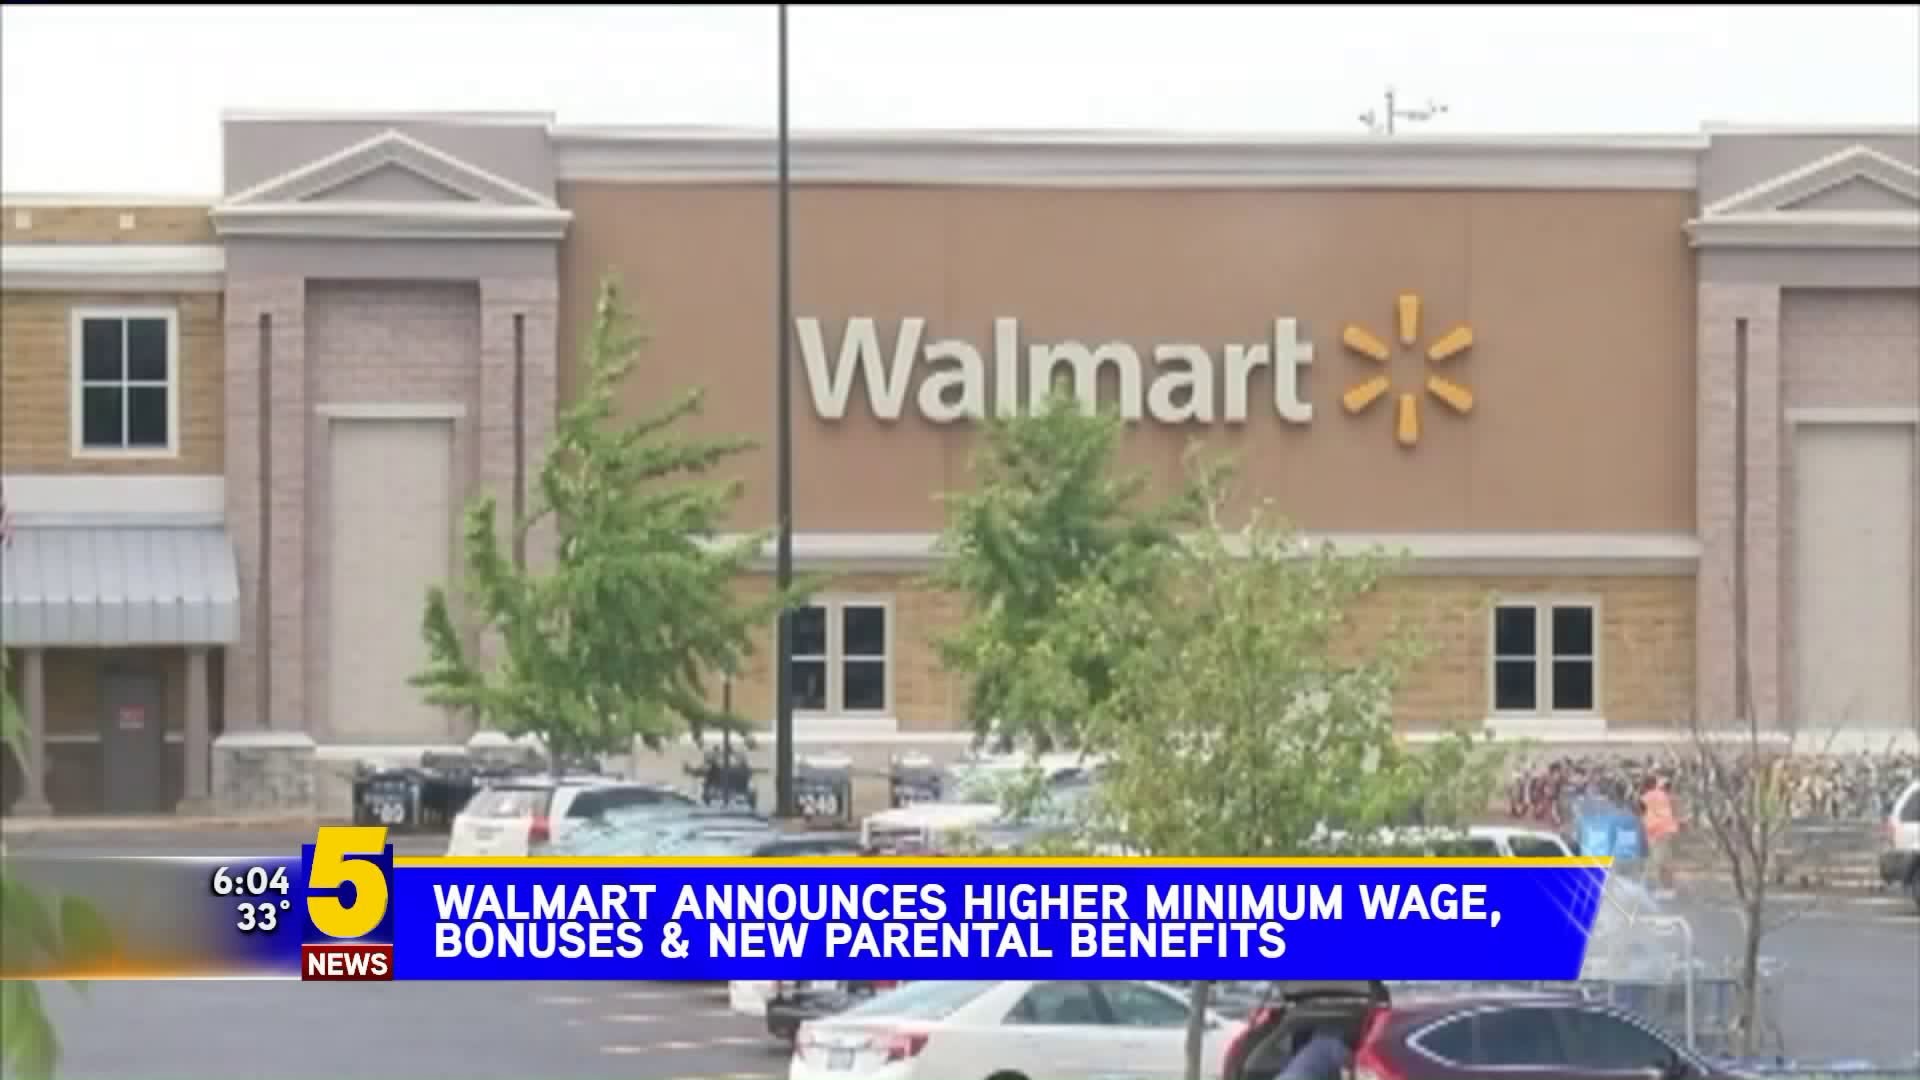 Walmart Announes Higher Minimum Wage